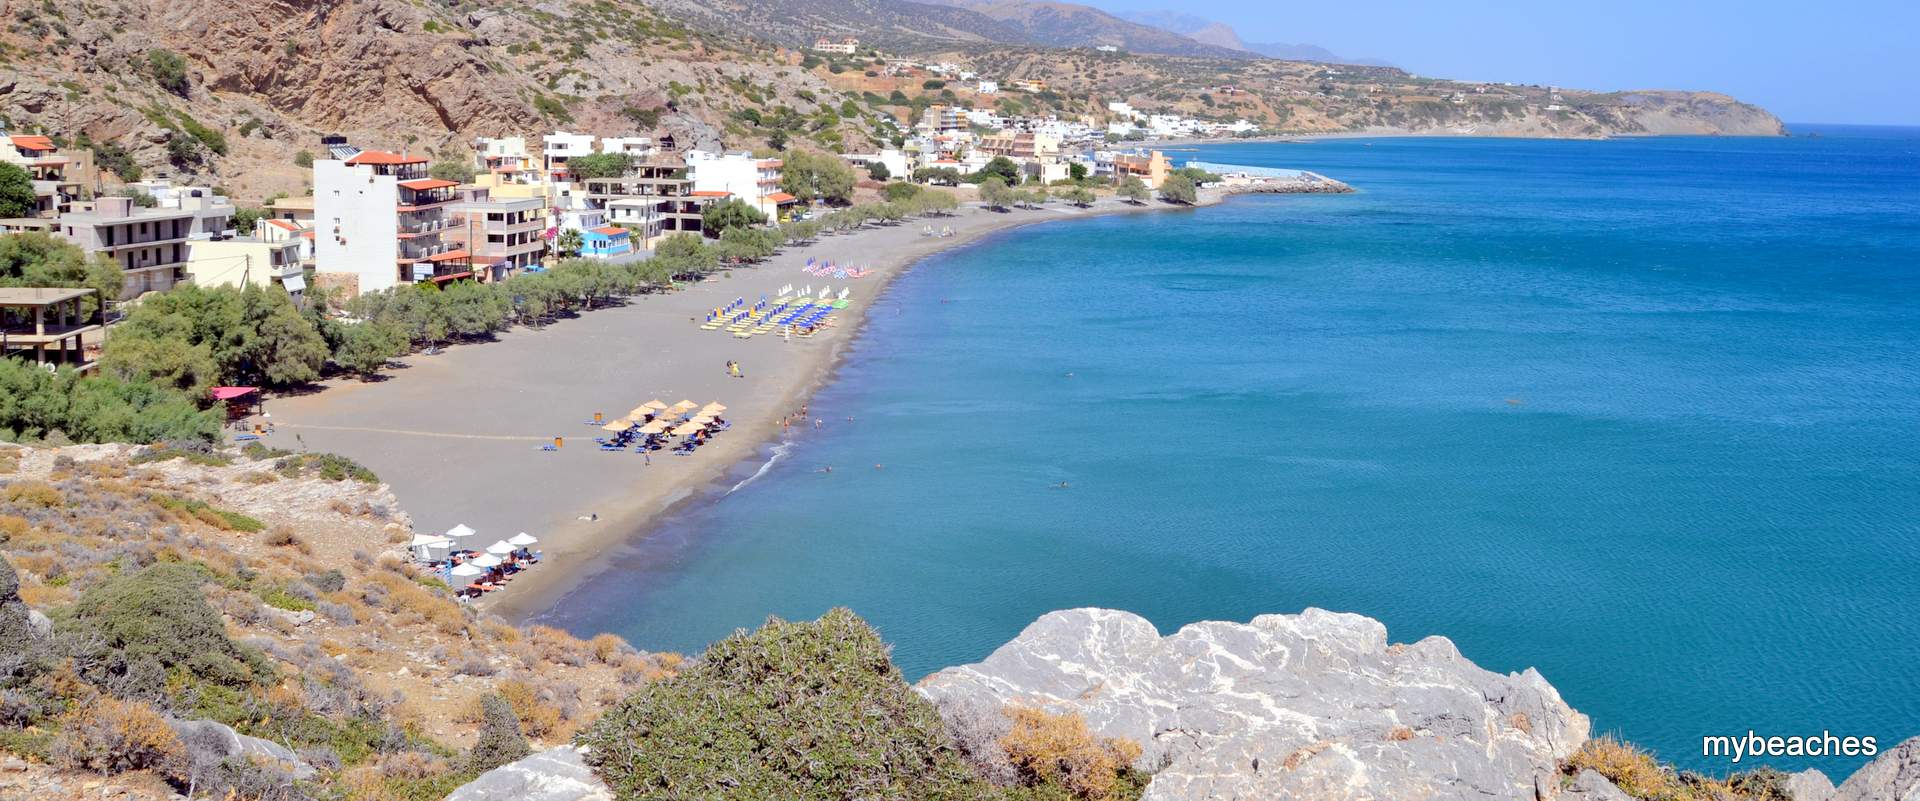 Tsoutsouras beach, Iraklio, Crete, Greece